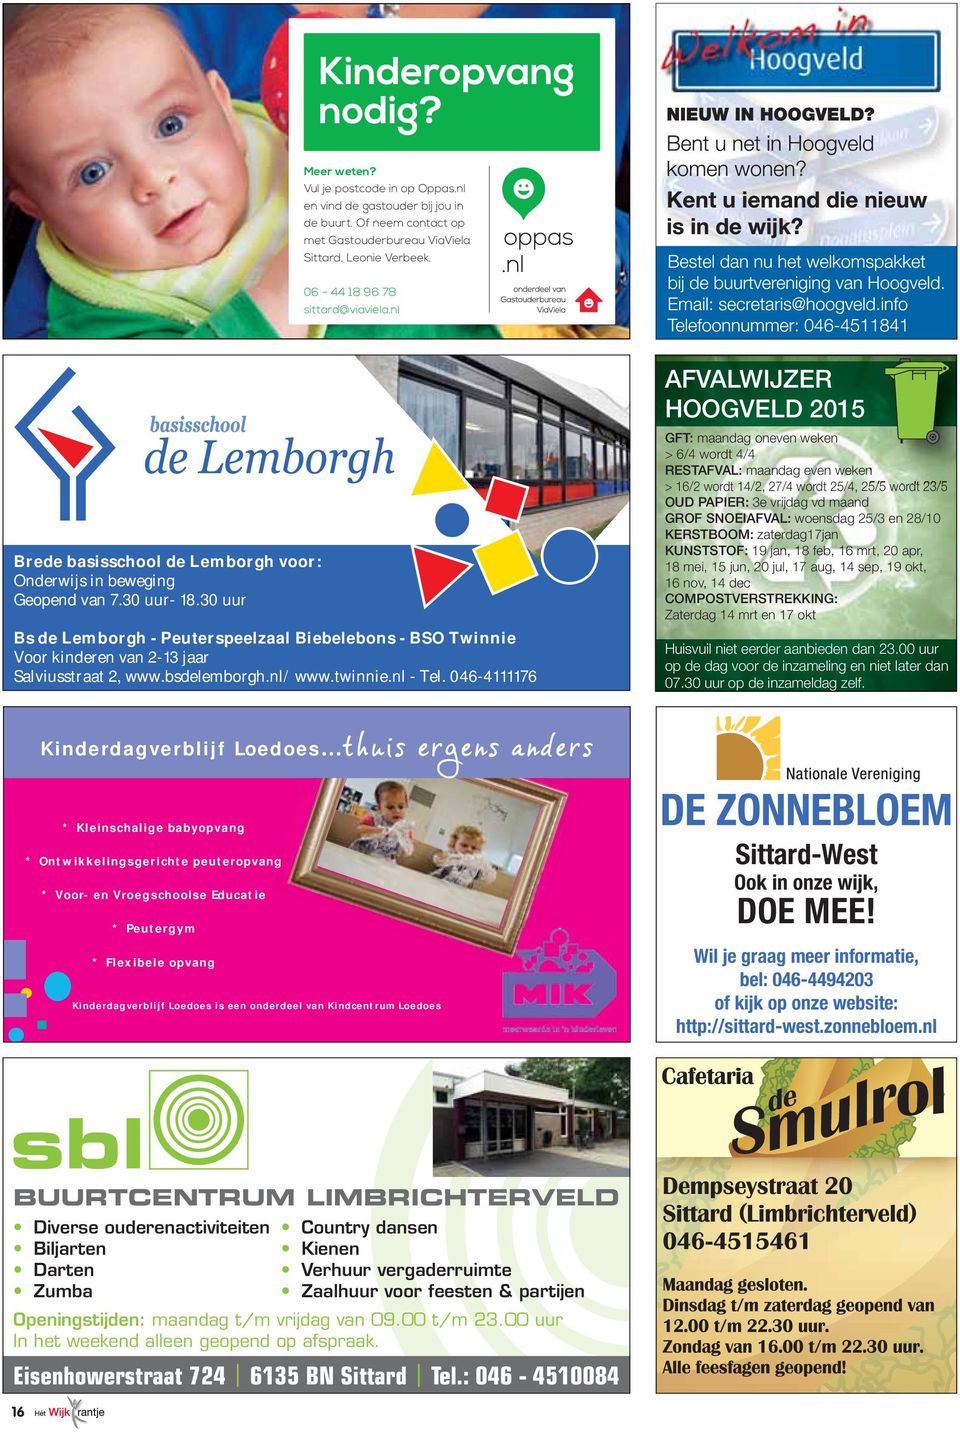 30 uur Bs de Lemborgh - Peuterspeelzaal Biebelebons - BSO Twinnie Voor kinderen van 2-13 jaar Salviusstraat 2, www.bsdelemborgh.nl/ www.twinnie.nl - Tel.